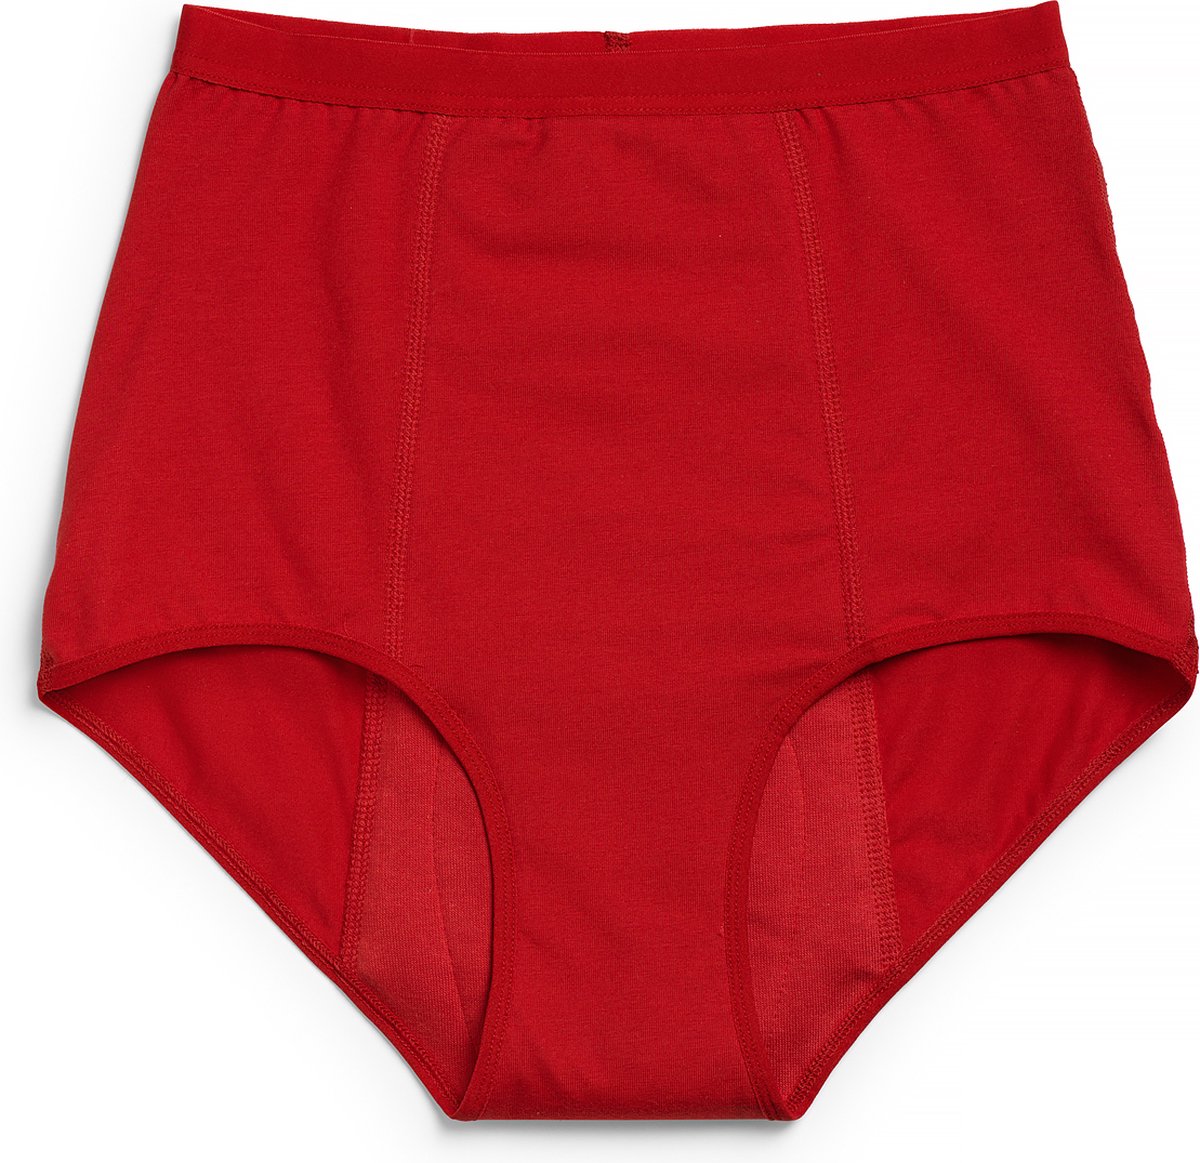 ImseVimse - Imse - menstruatieondergoed - High Waist period underwear - hevige menstruatie - M - eur 40/42 - rood